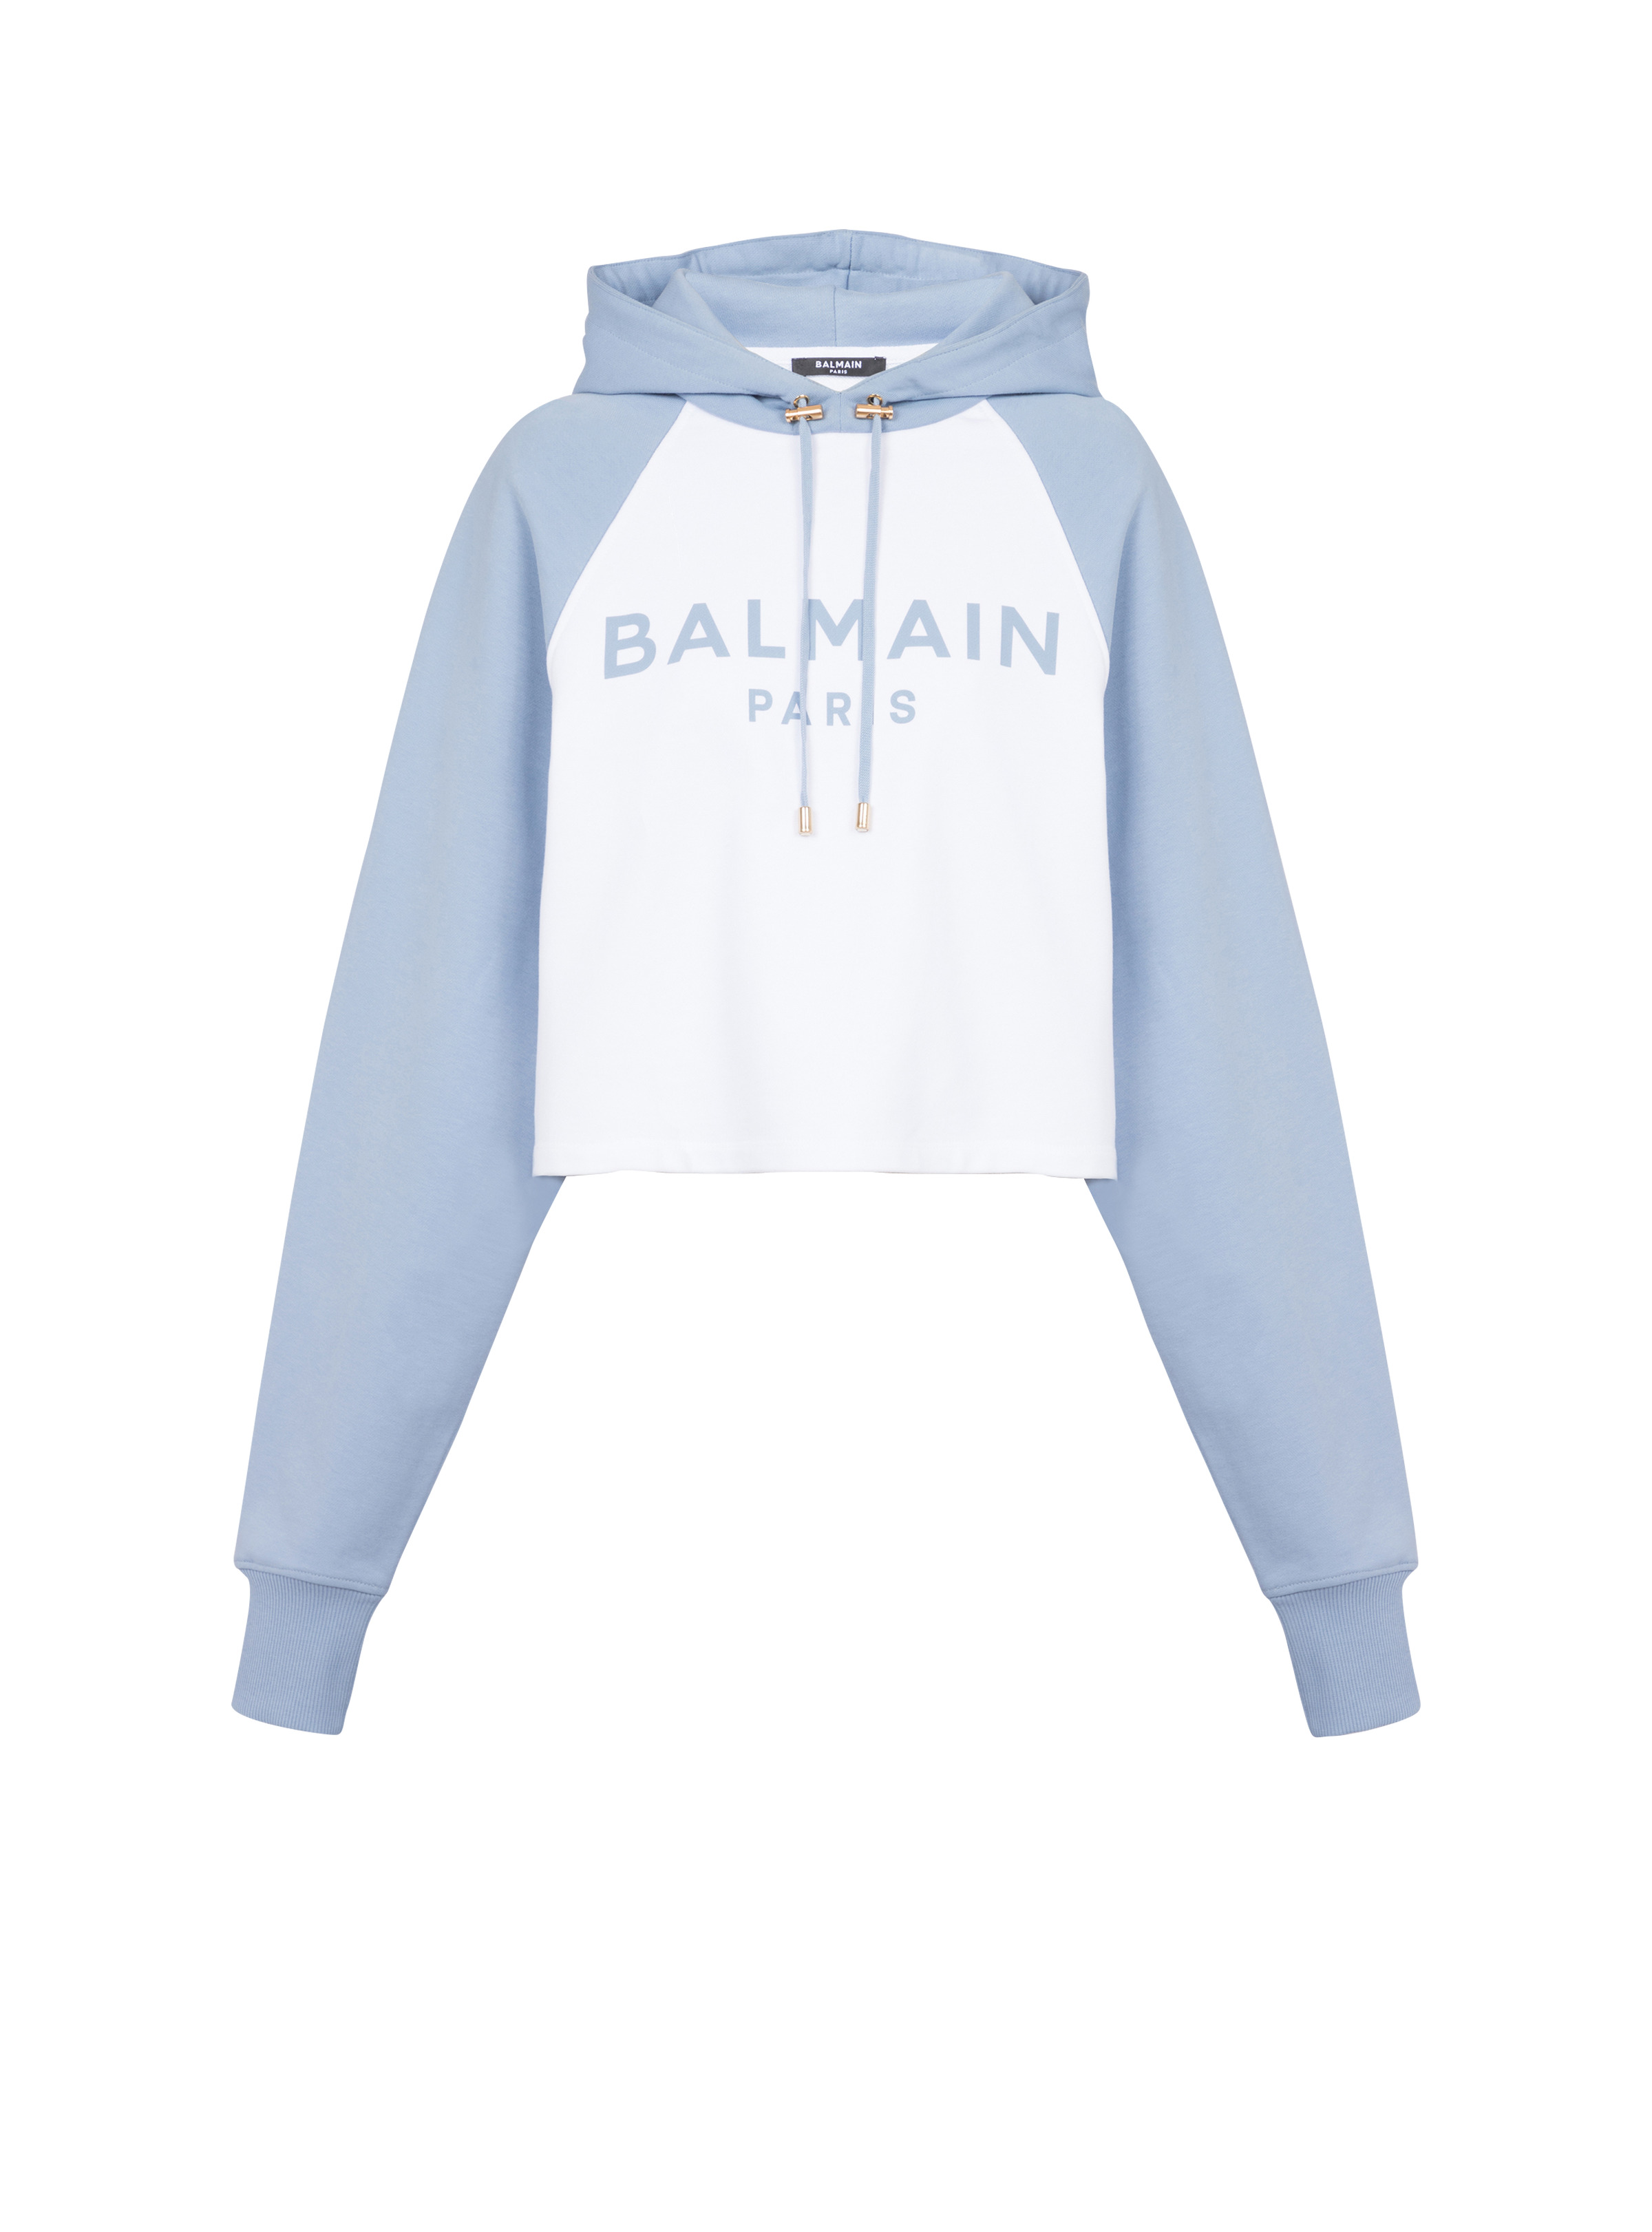 Balmain Paris hoodie - 1